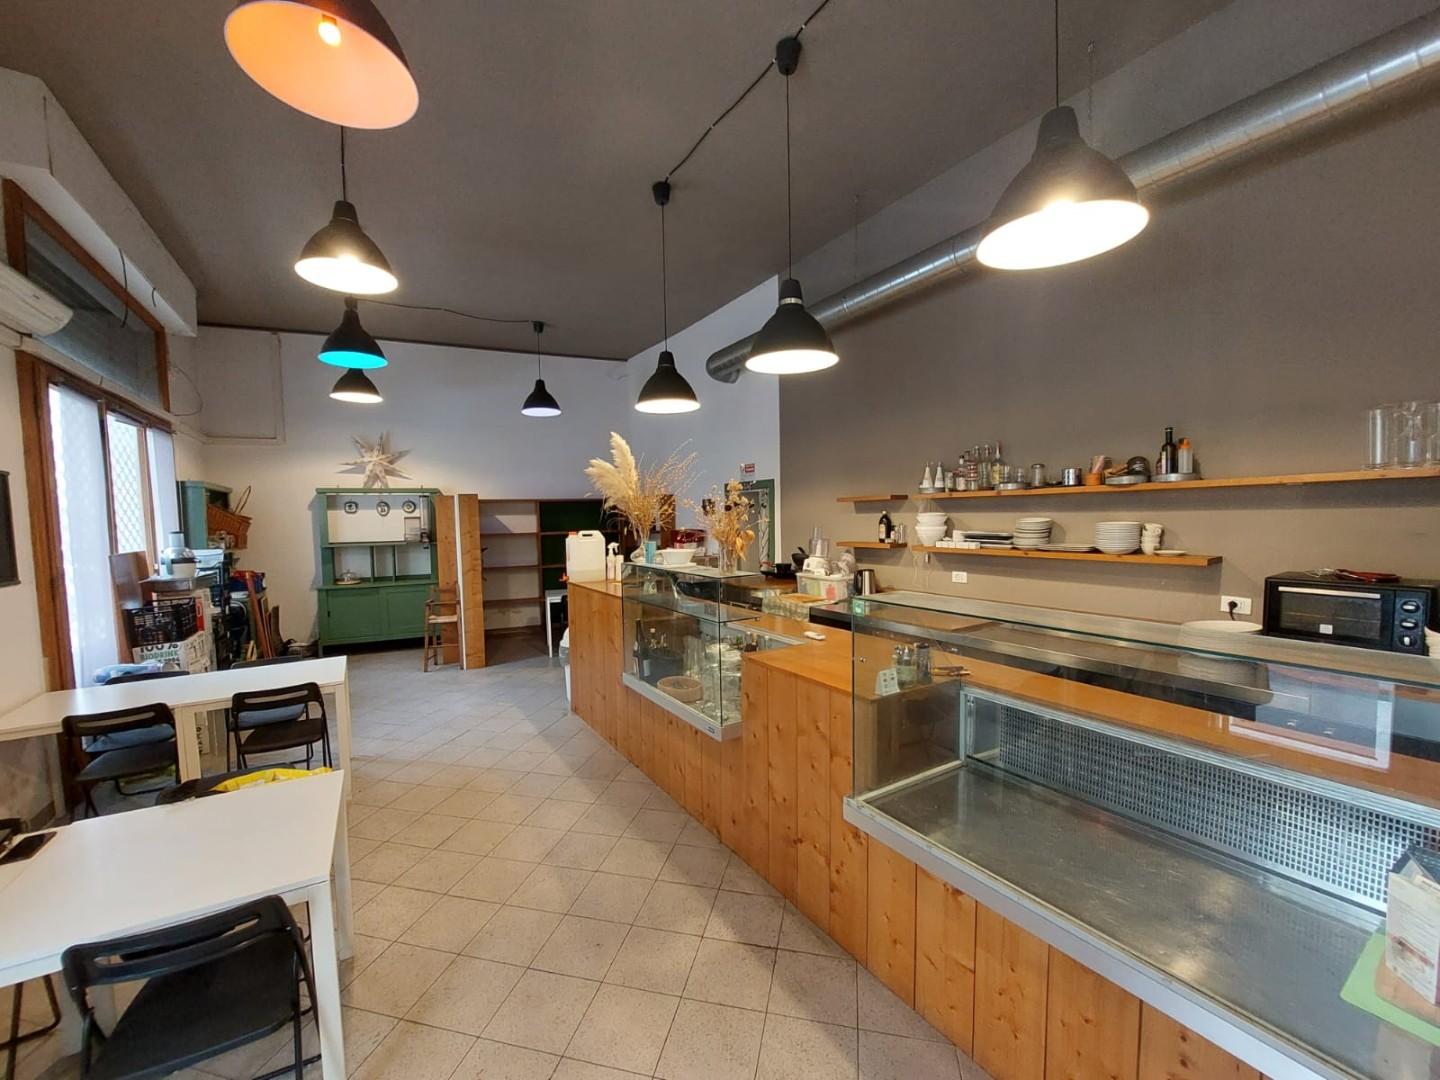 Ristorante / Pizzeria / Trattoria in vendita a Pontedera, 5 locali, prezzo € 30.000 | CambioCasa.it